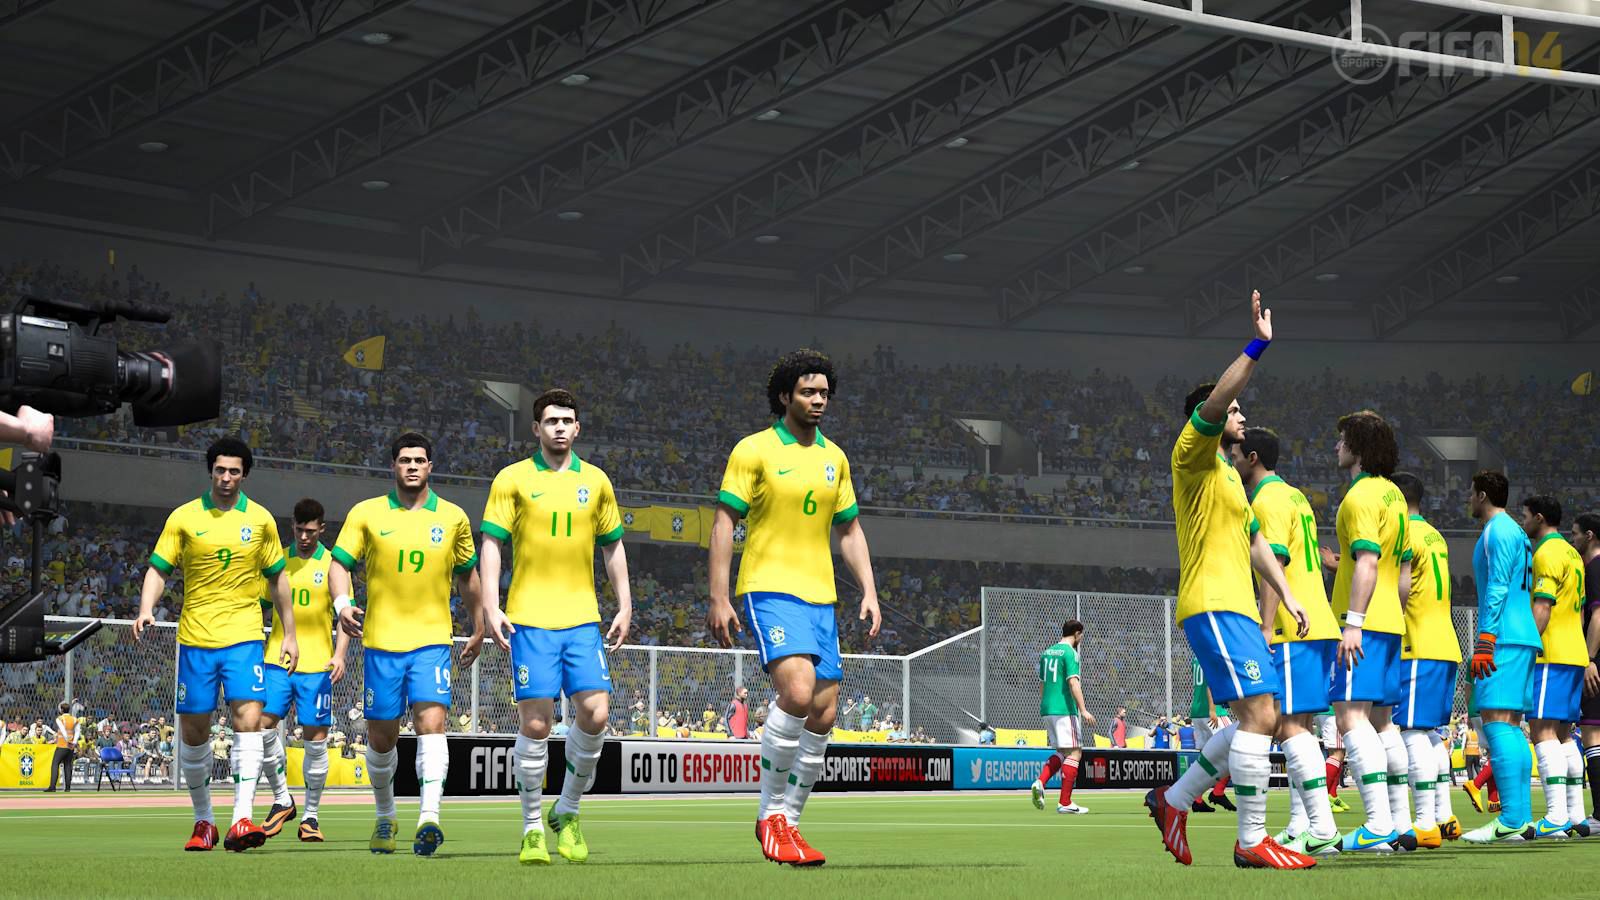 Copa do Mundo FIFA Brasil 2014: testamos o novo game da franquia